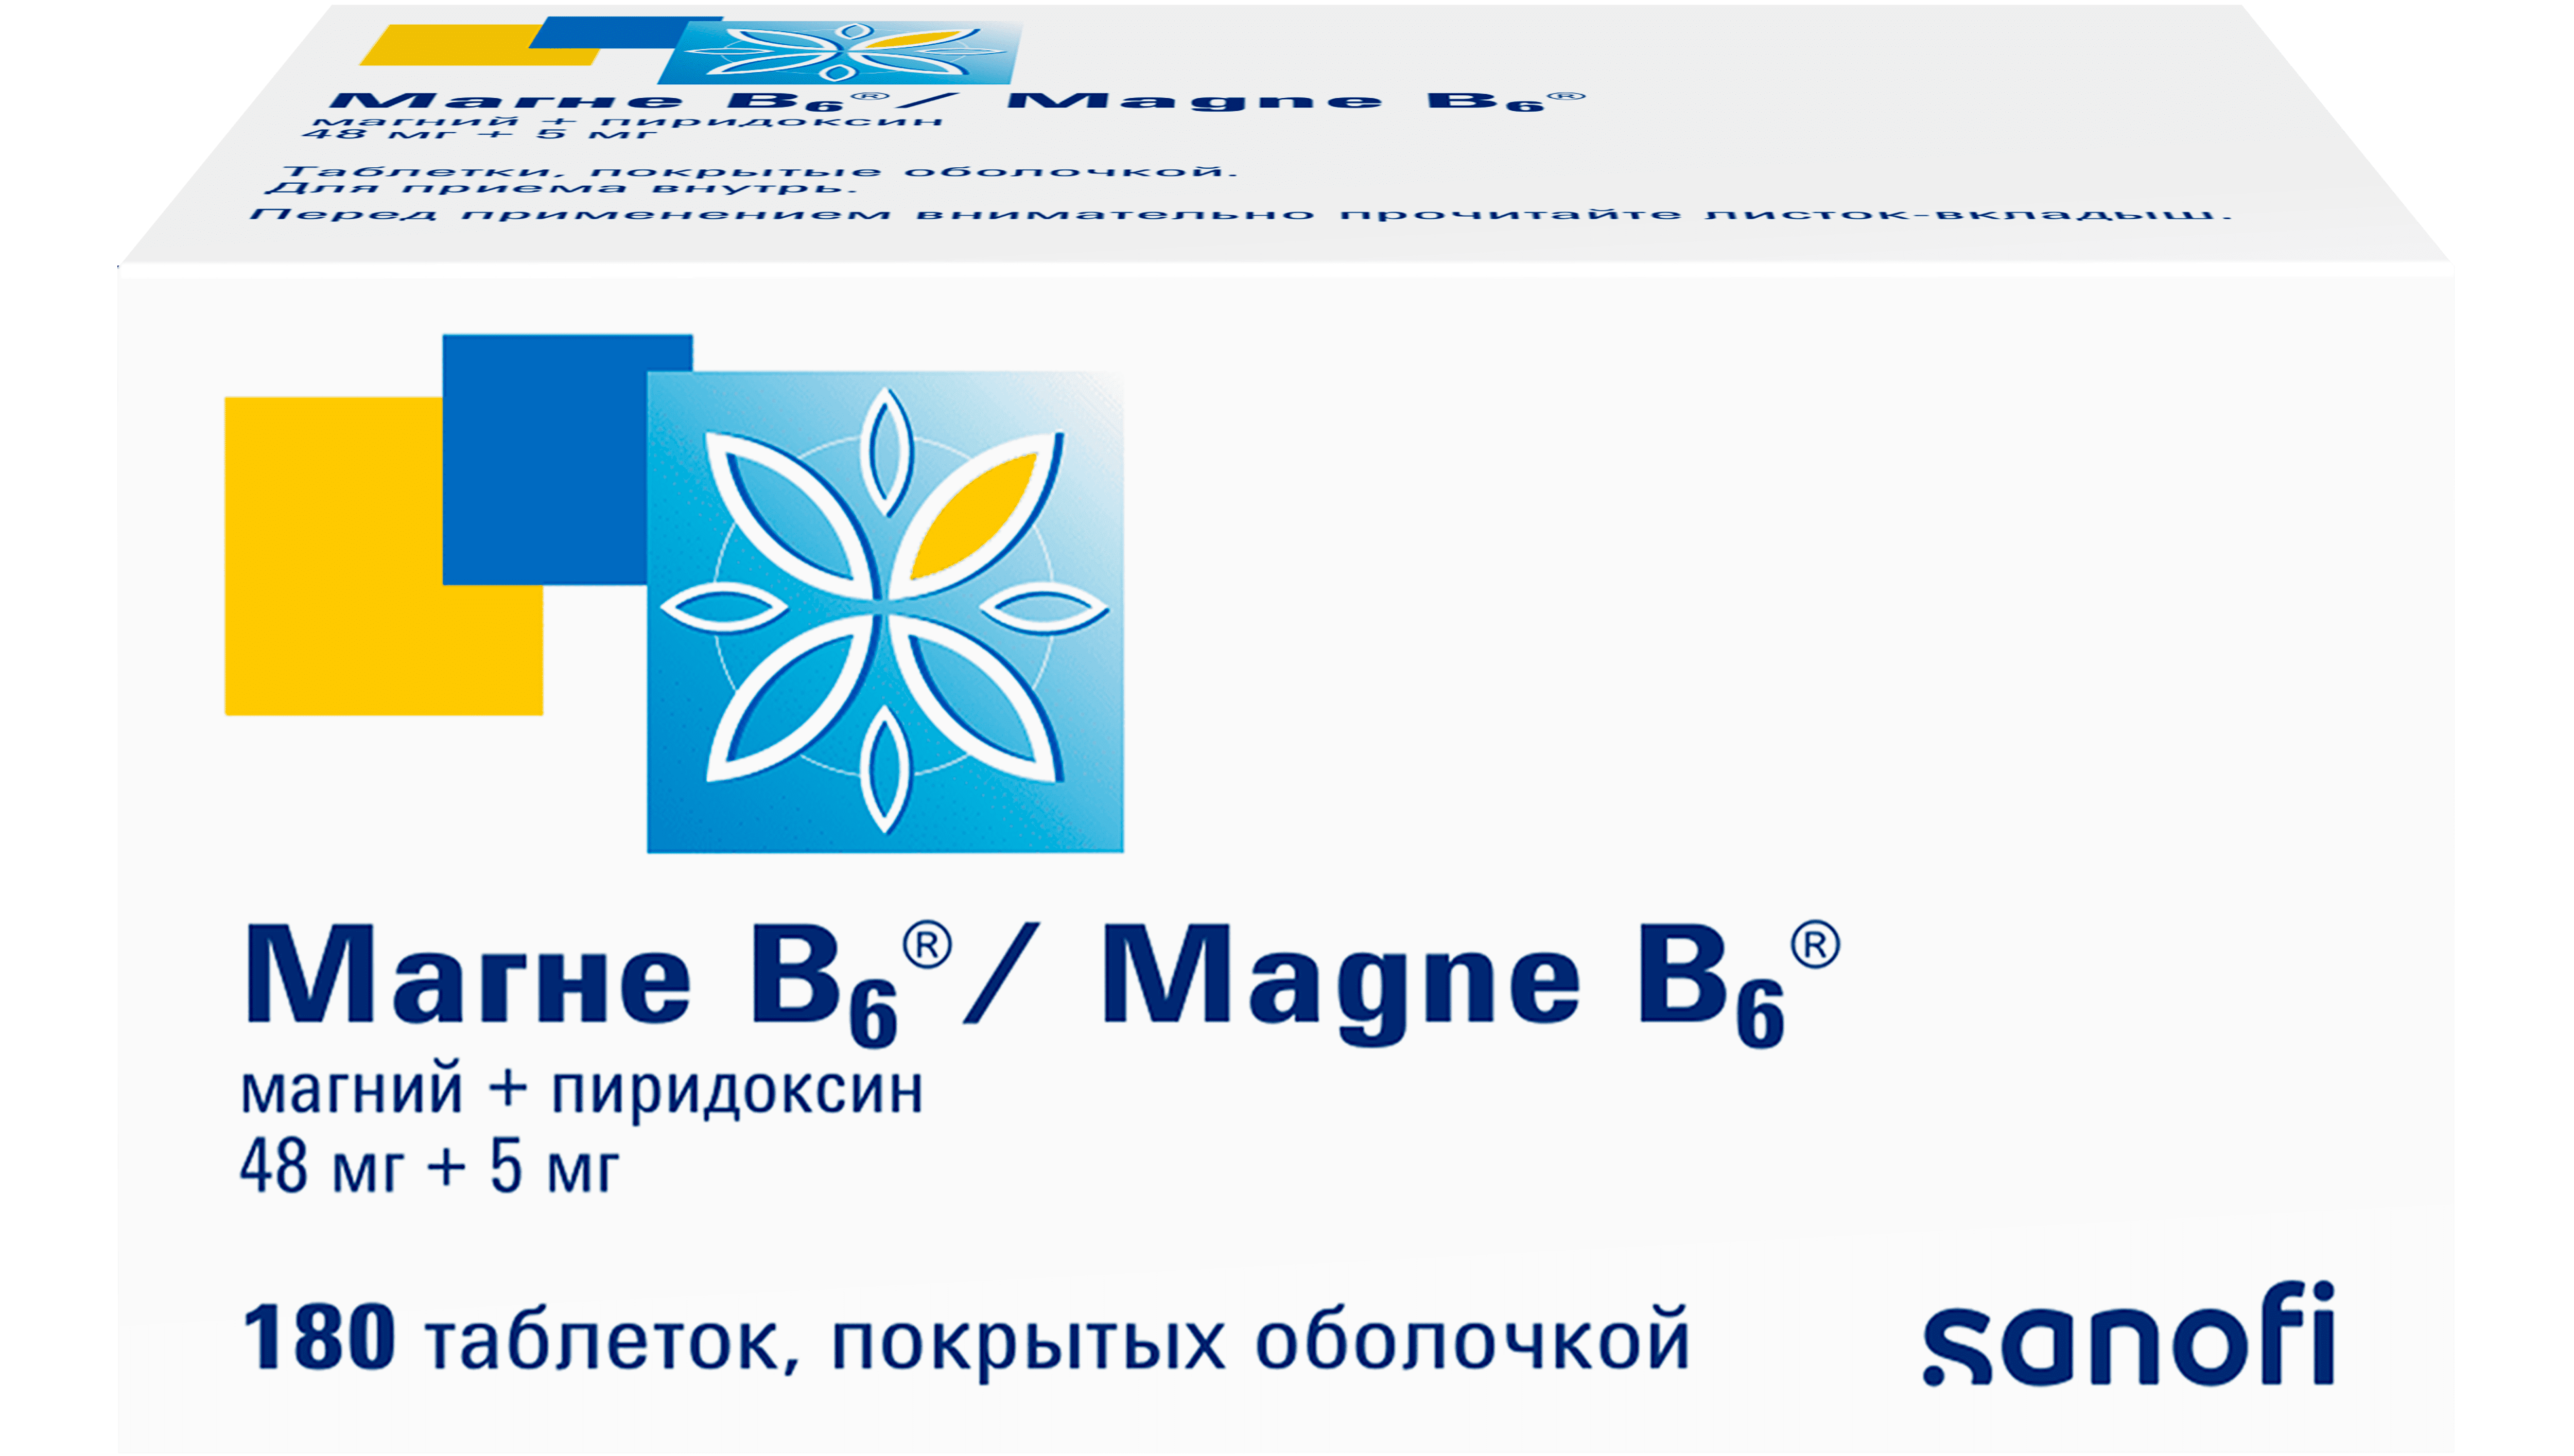 Магне В6: официальный сайт лекарственного препарата